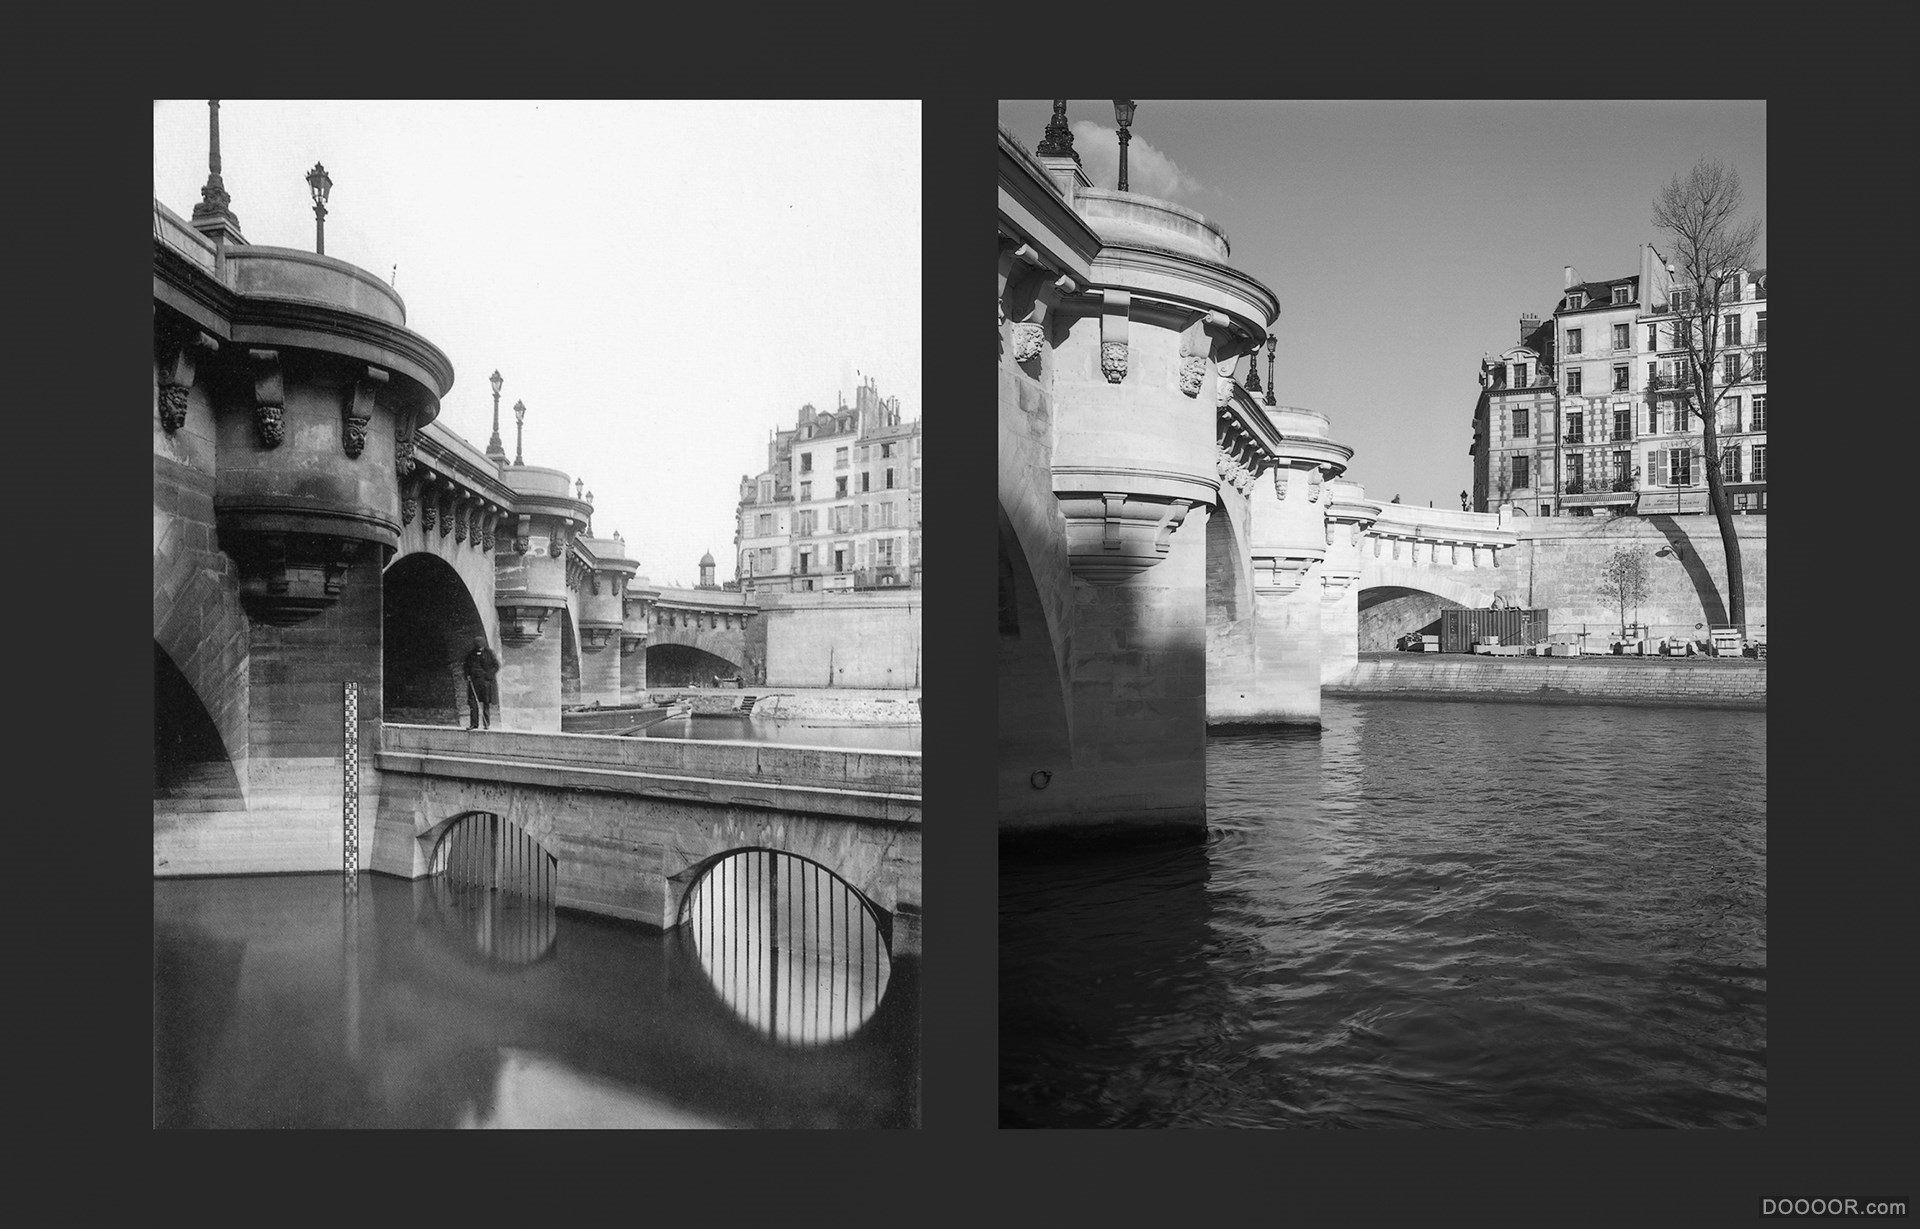 过去与现在-巴黎街头照片对比 [50P] (5).jpg